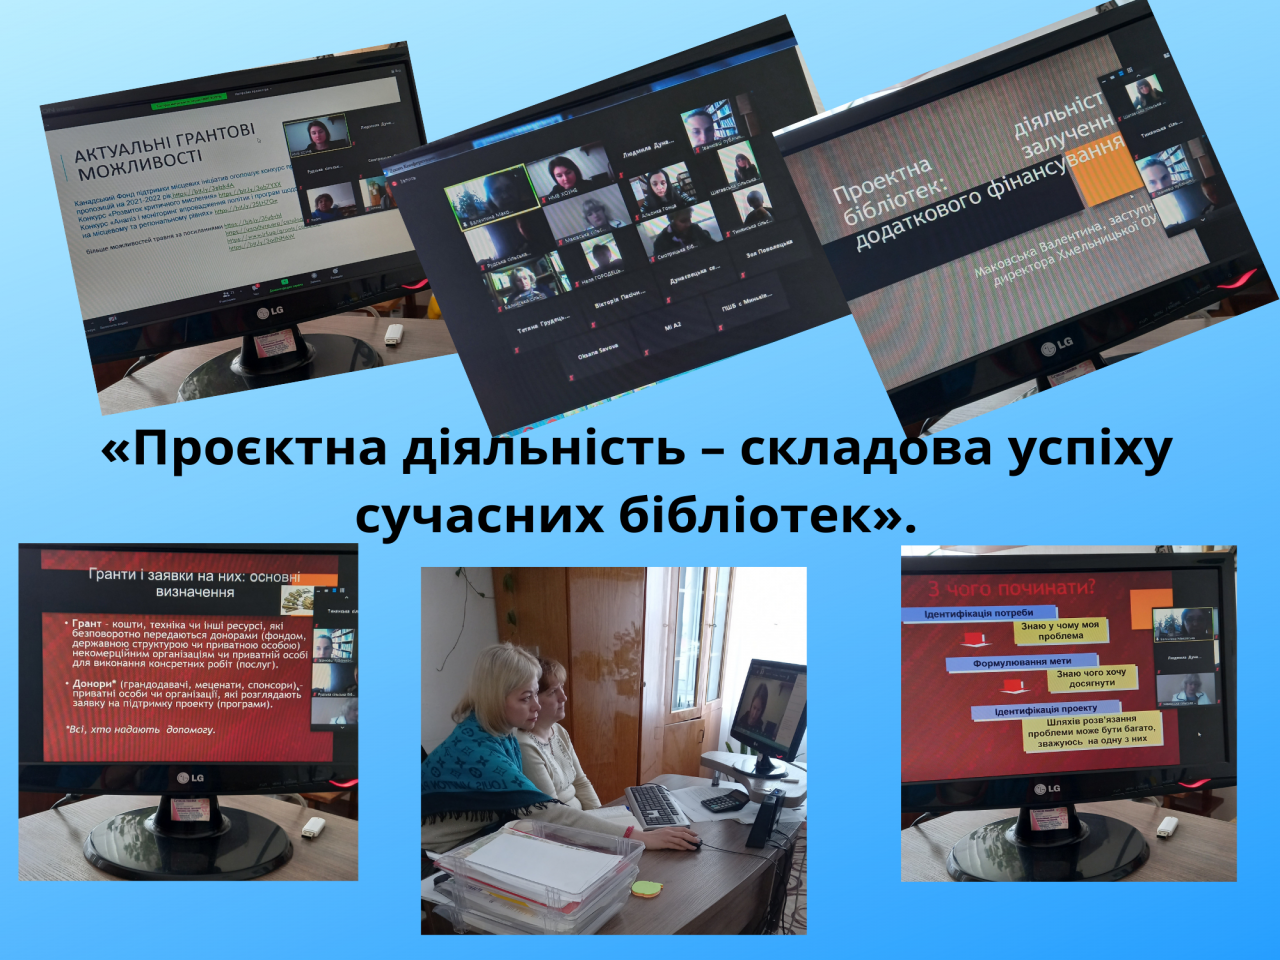 http://dunrada.gov.ua/uploadfile/archive_news/2021/05/14/2021-05-14_5993/images/images-36224.png